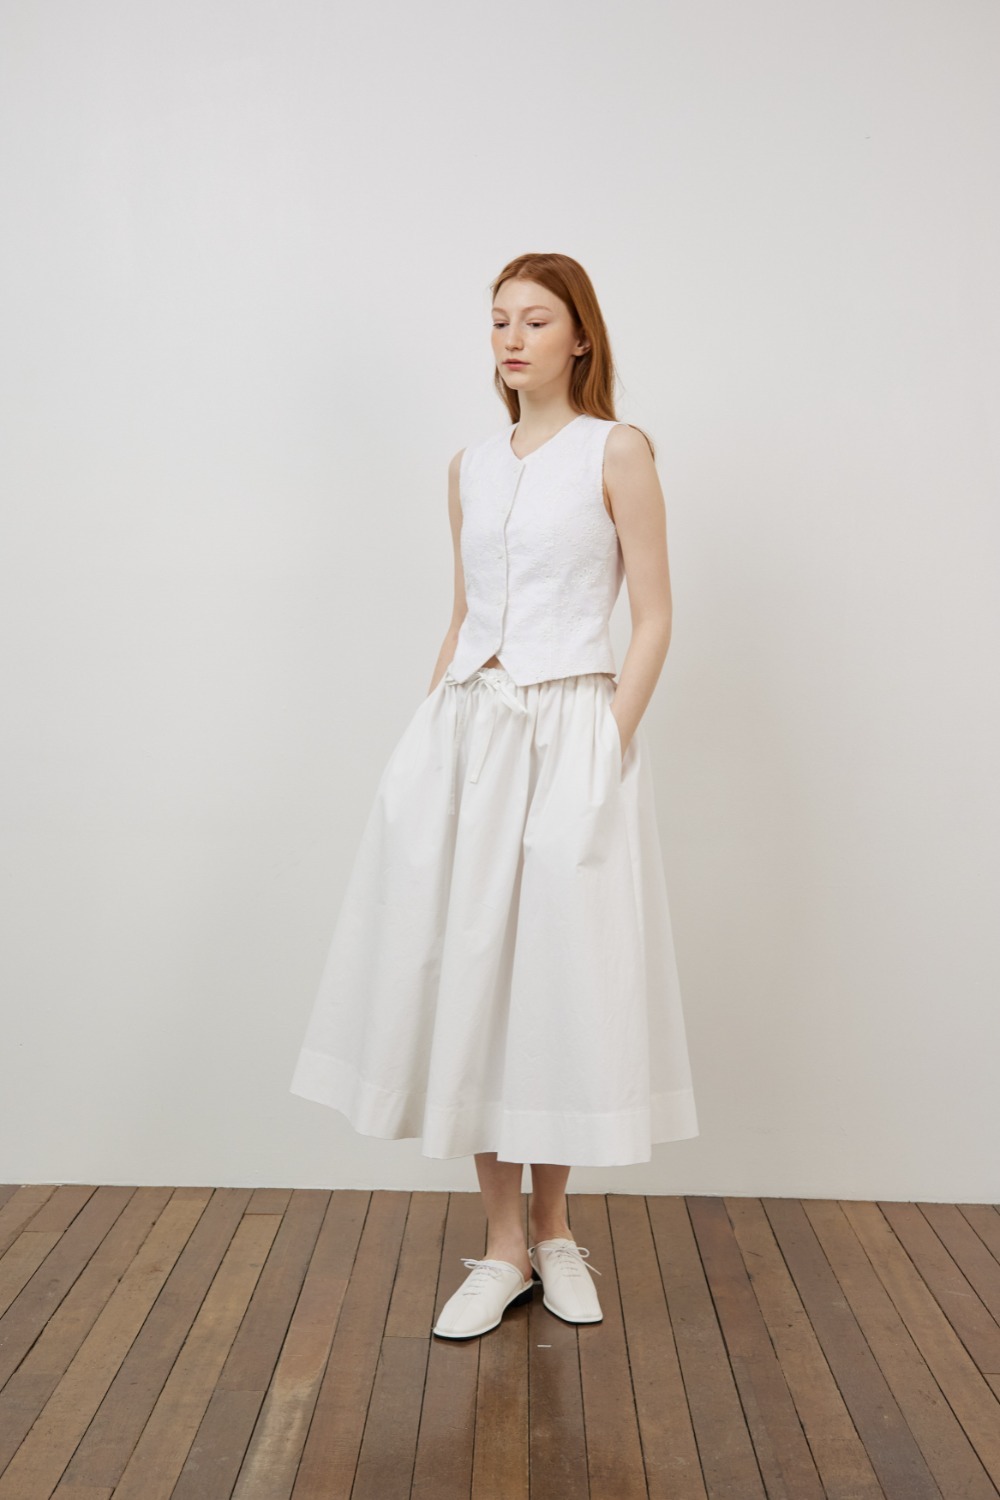 Cotton volume skirt in white [2차 리오더]